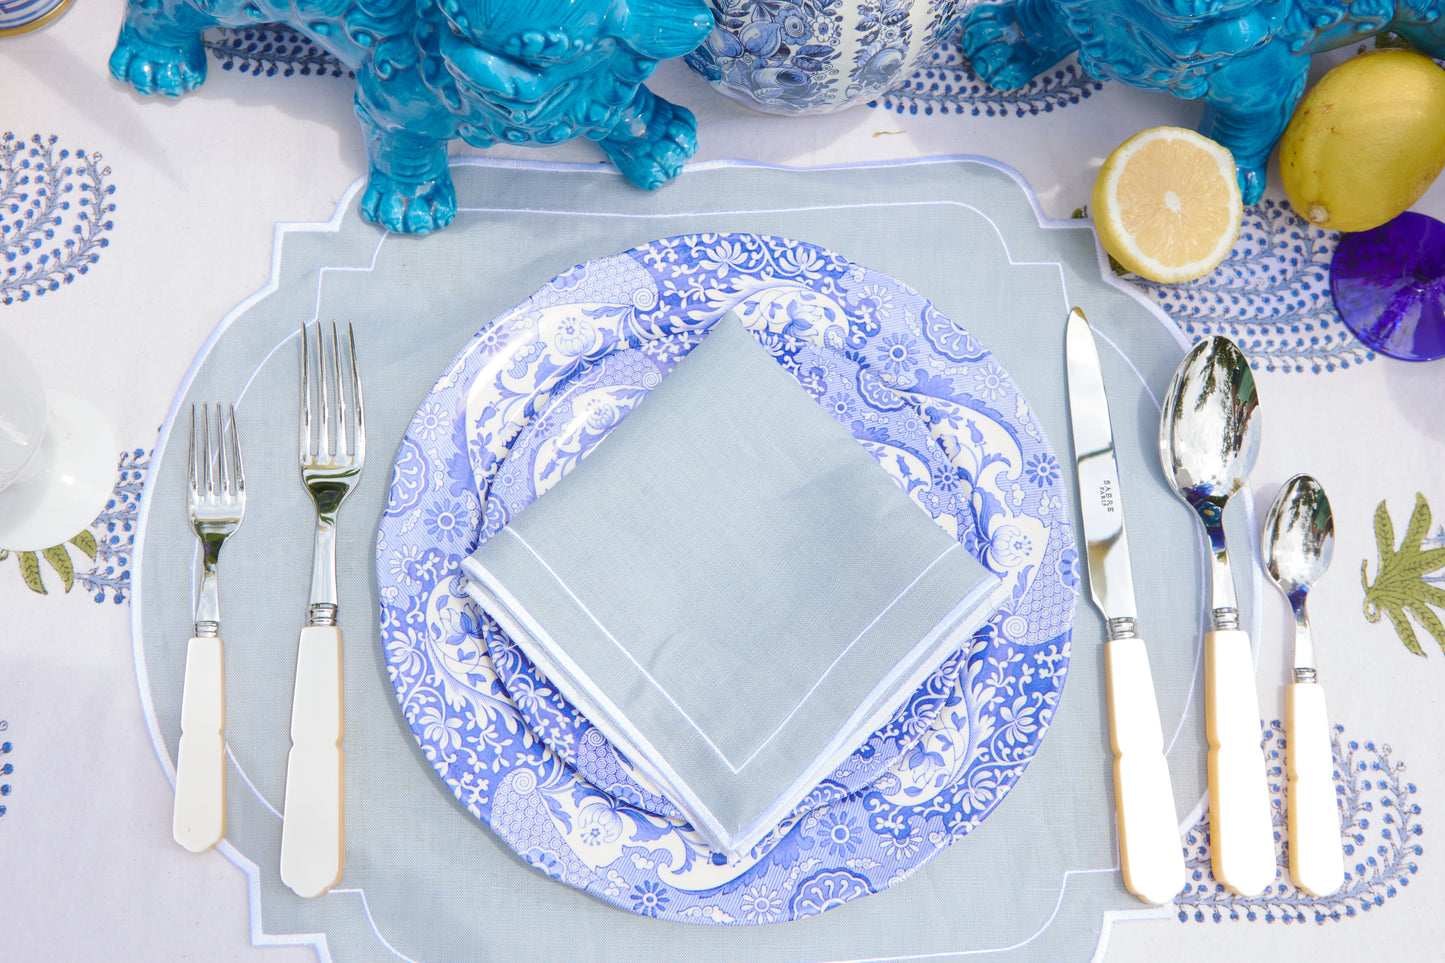 Dinner plate - Blue Italian set of 2